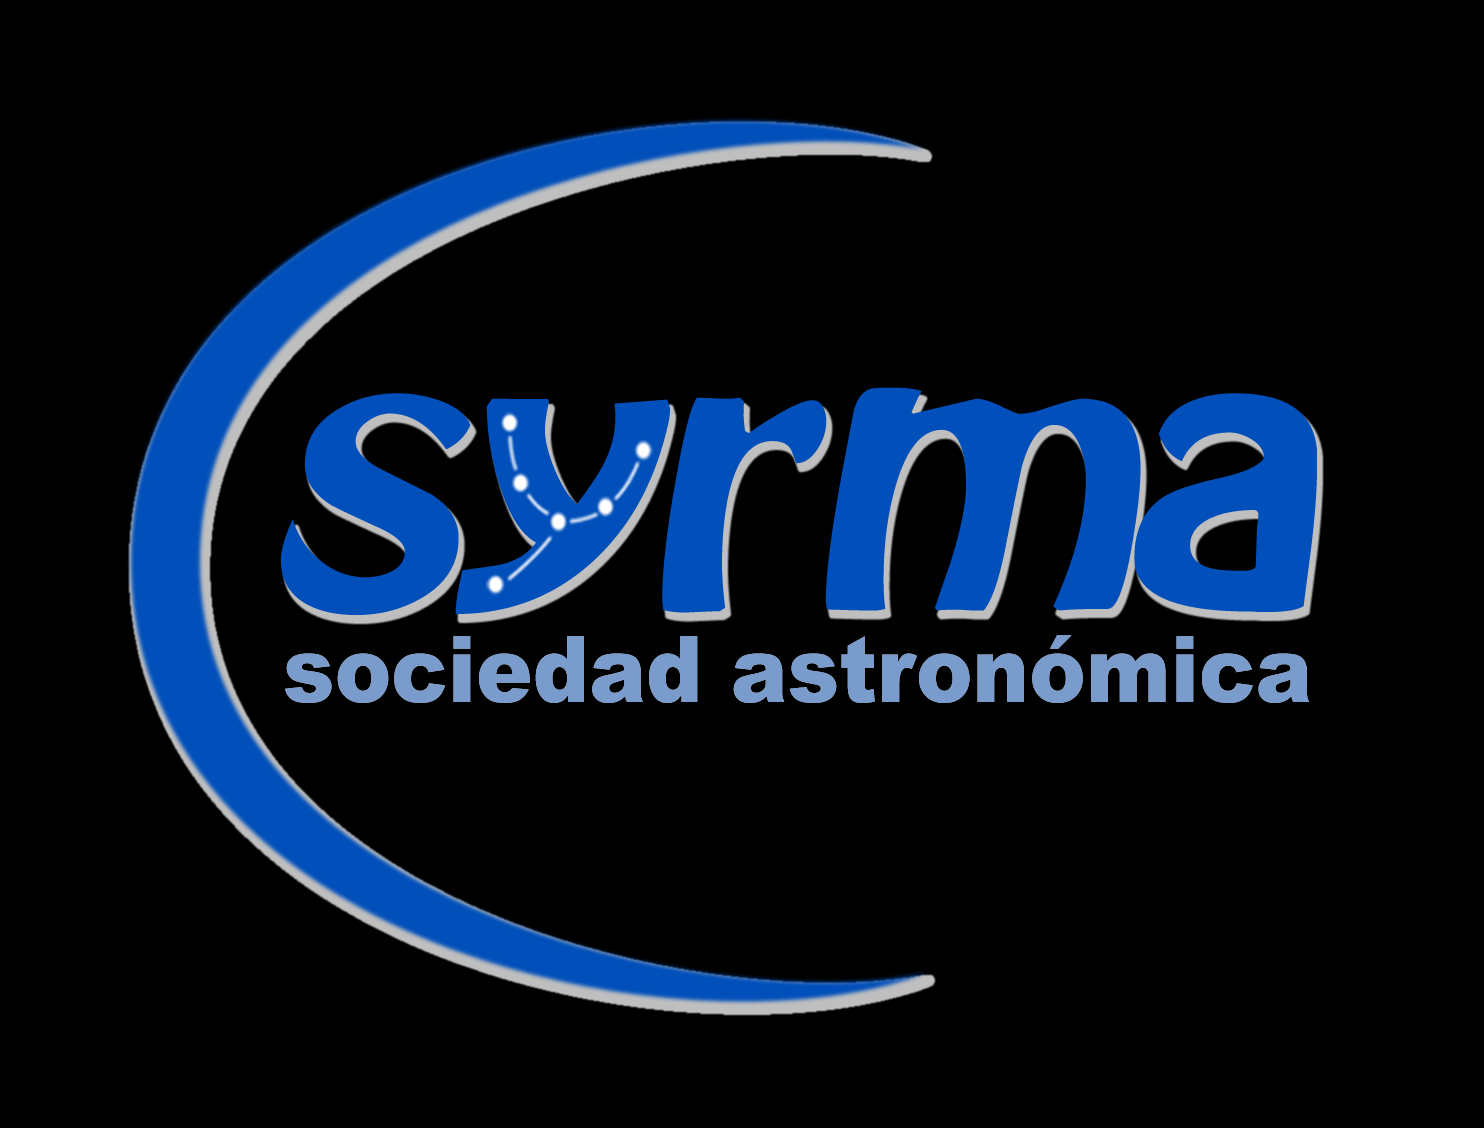 Sociedad Astronómica Syrma